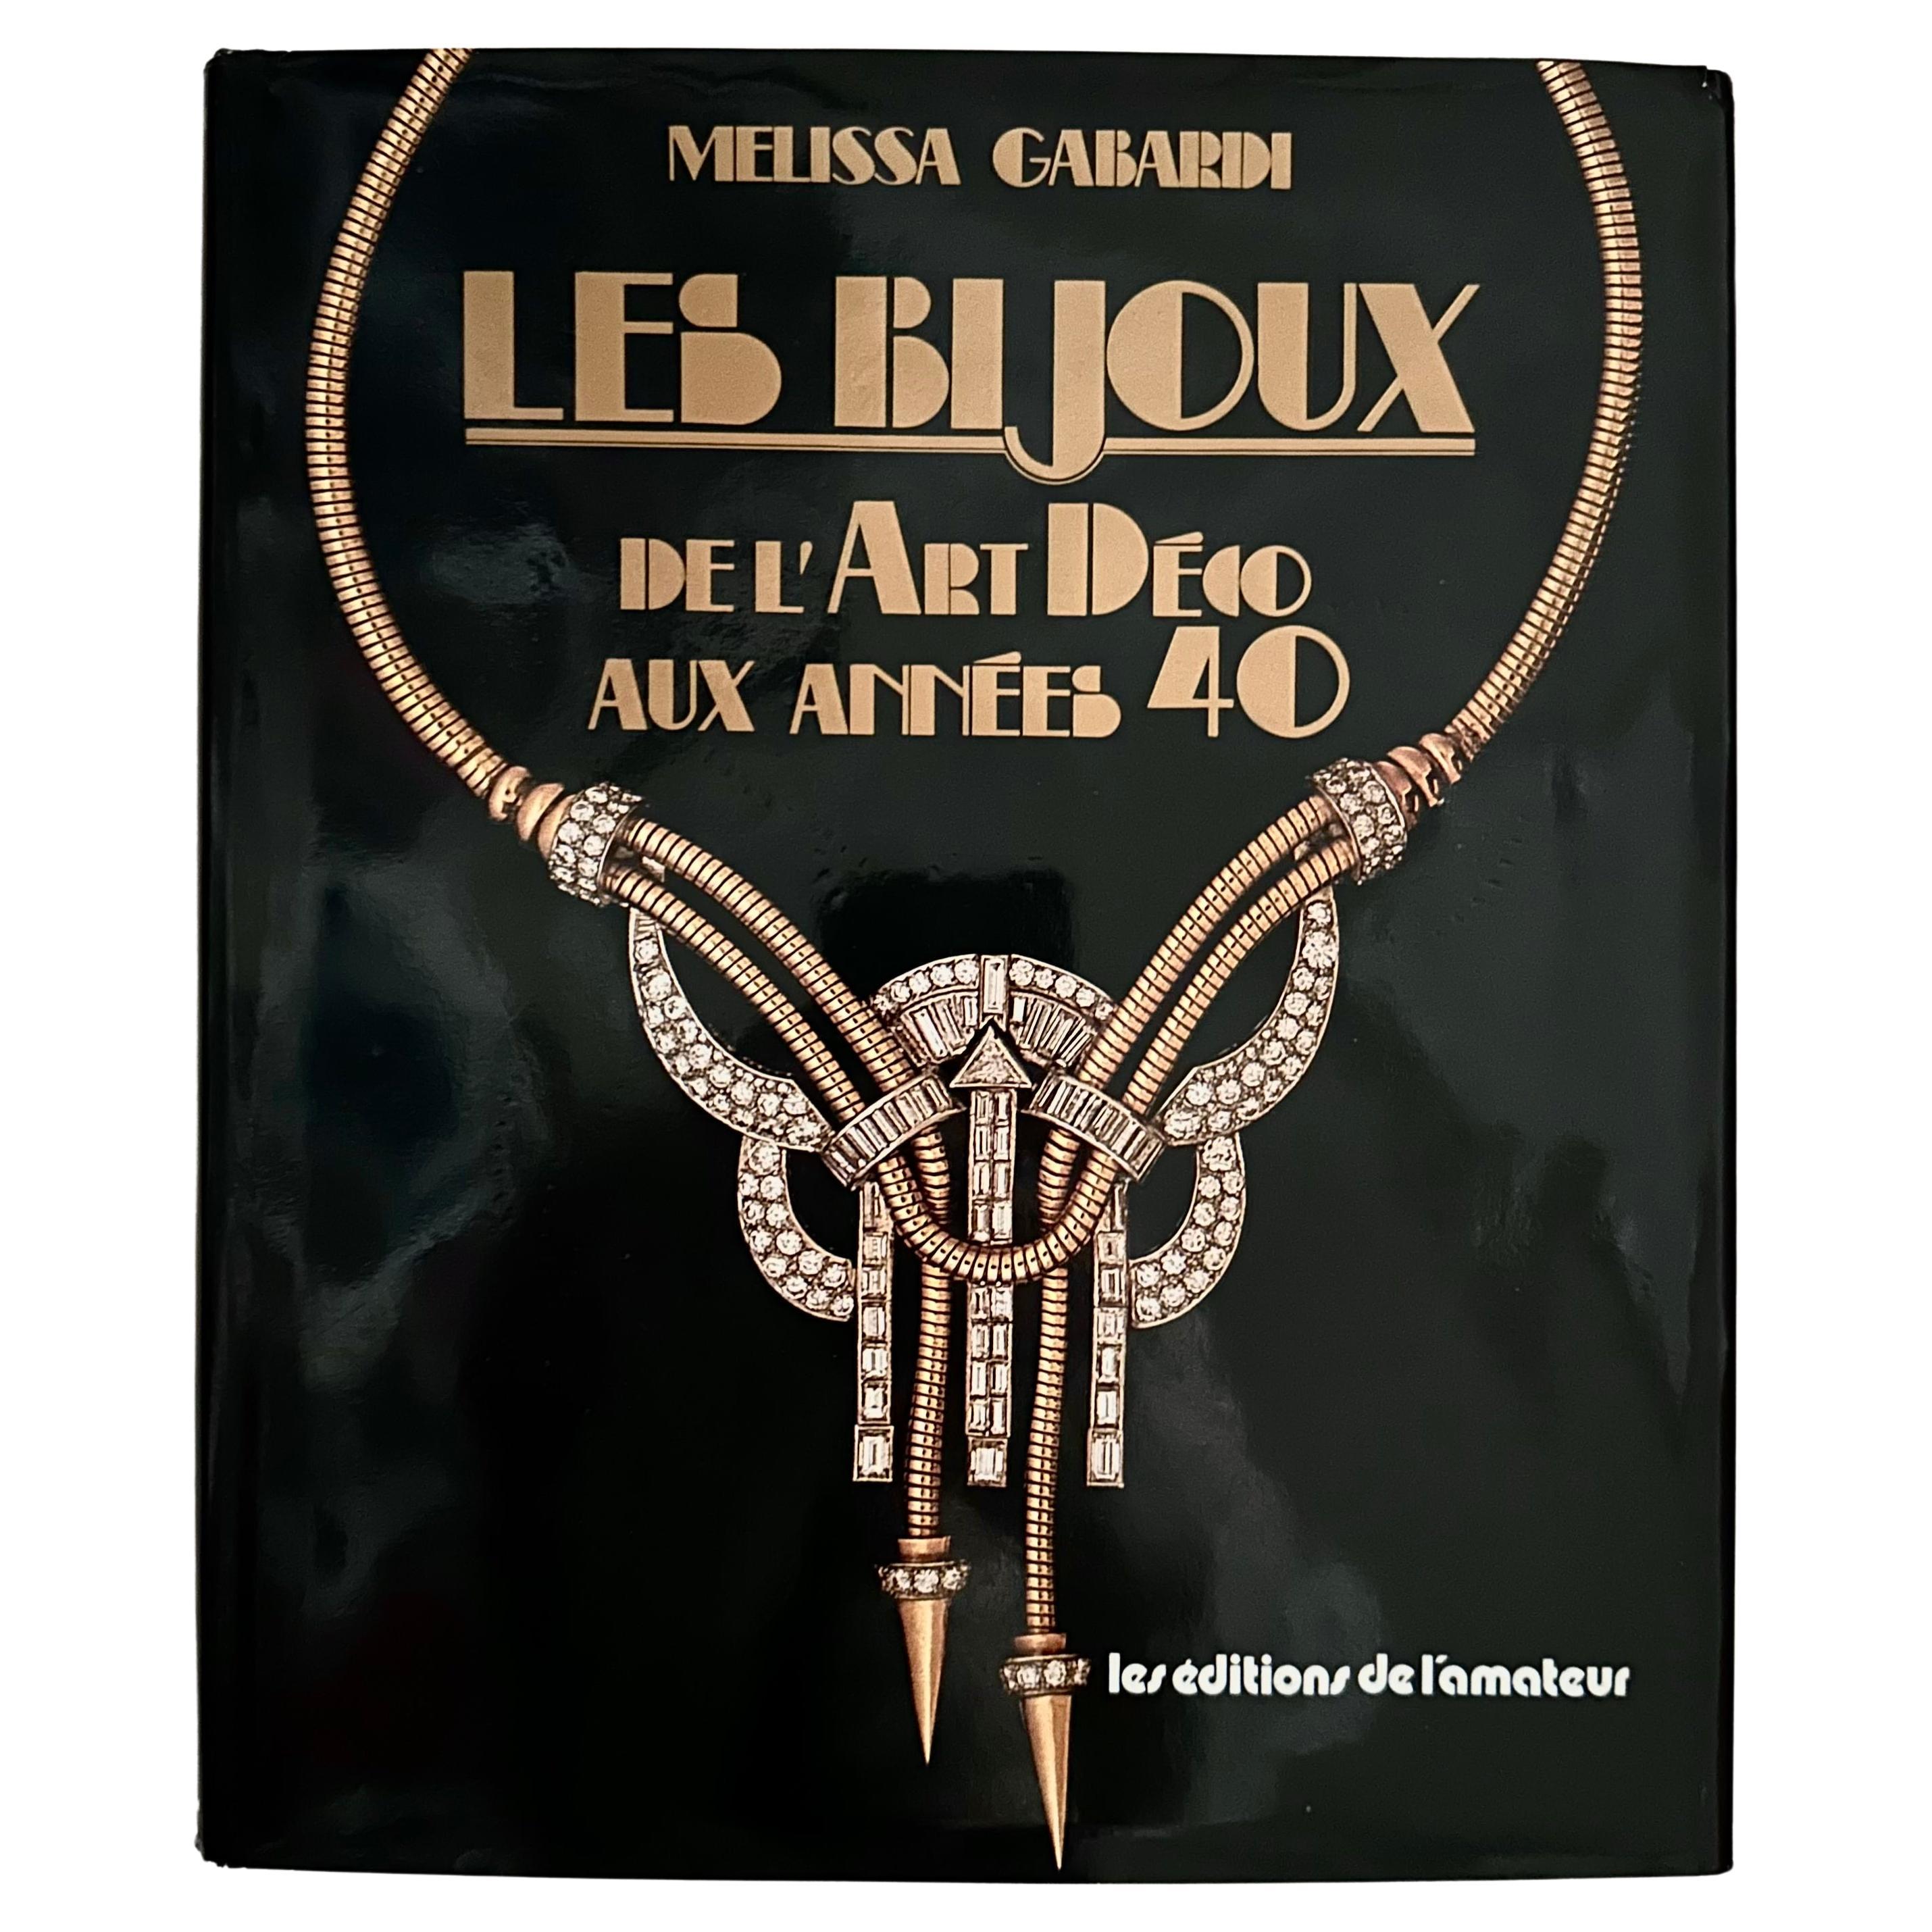 Les Bijoux de L'Art Déco aux Années 40 - Melissa Gabardi, 1ère édition, 1986